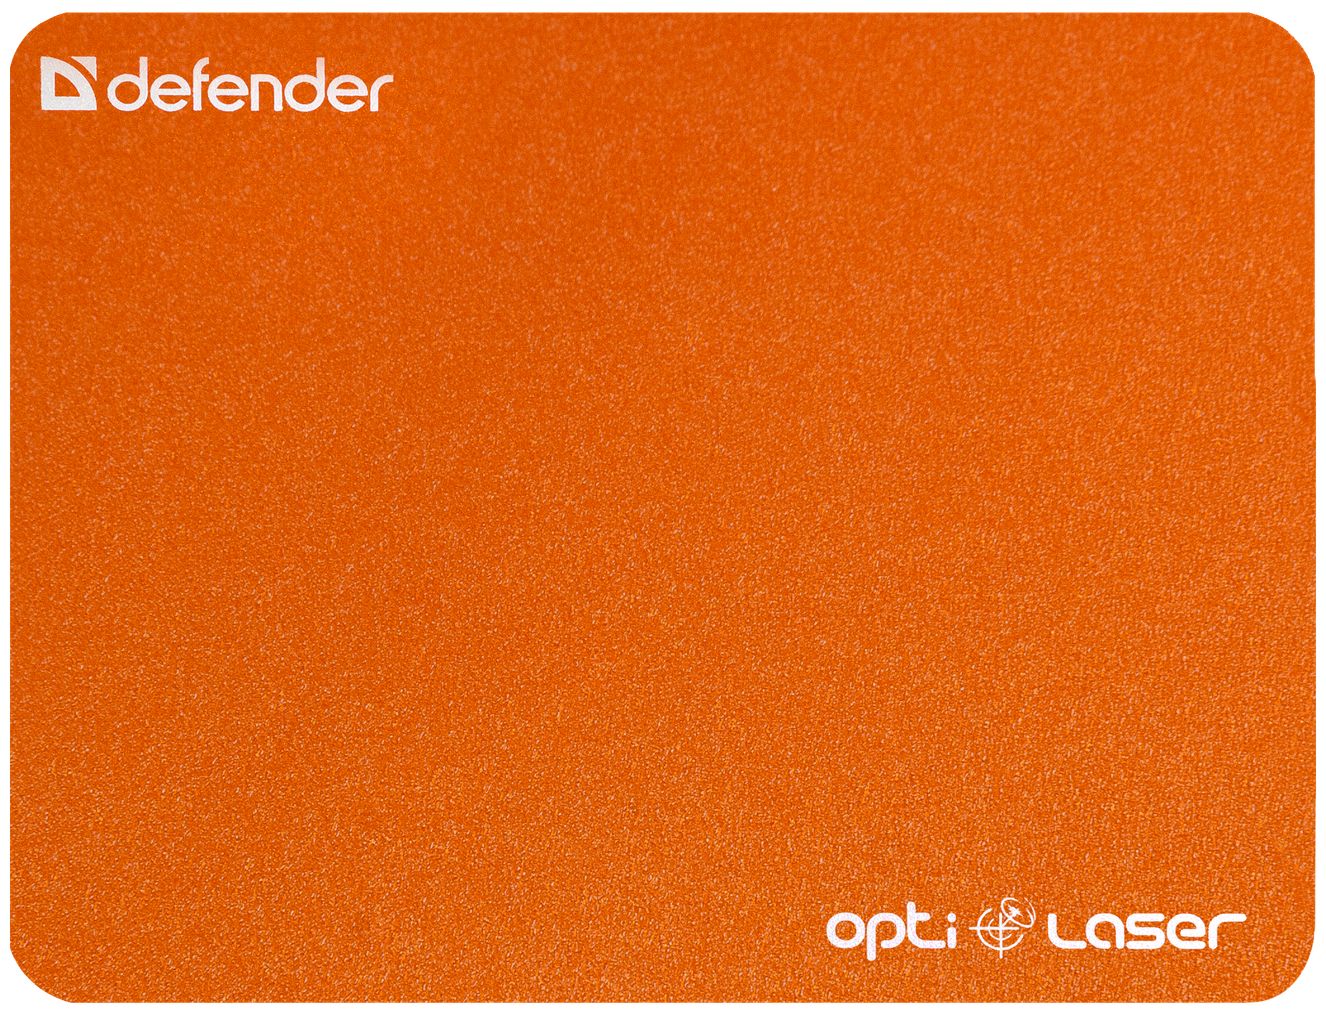 Defender Silver Laser 50410 defender wolverine gm 700l